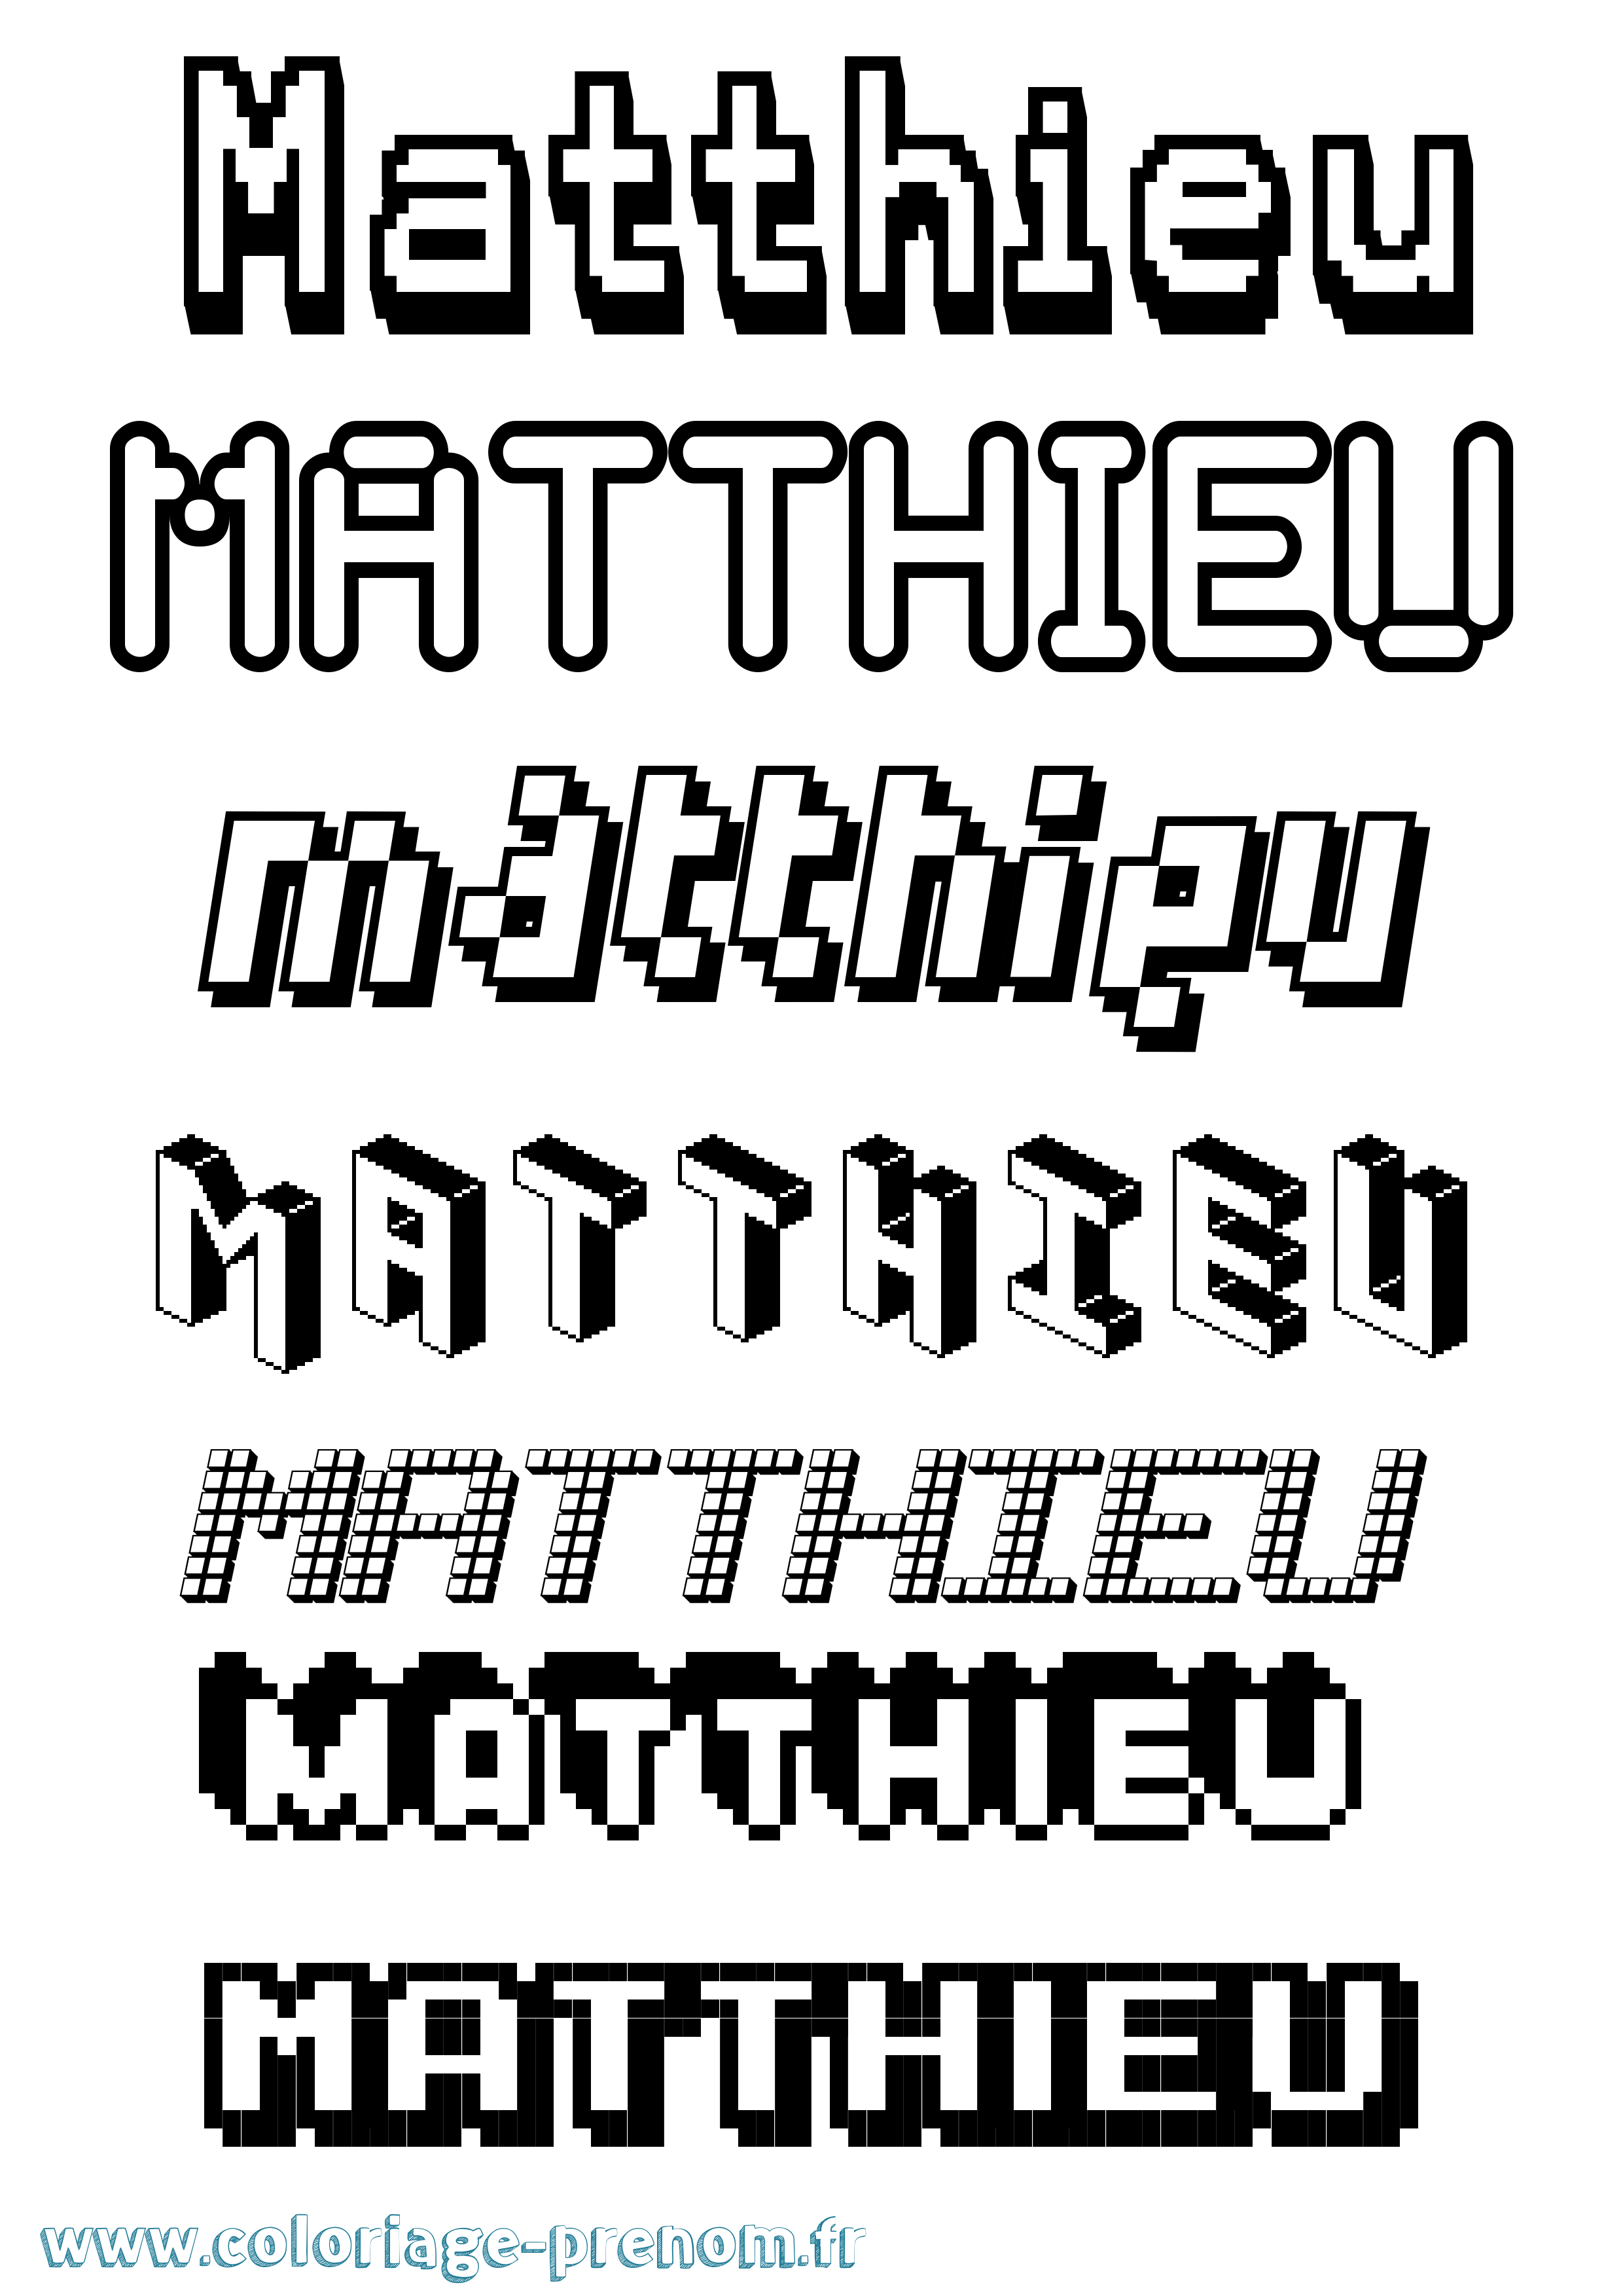 Coloriage prénom Matthieu Pixel